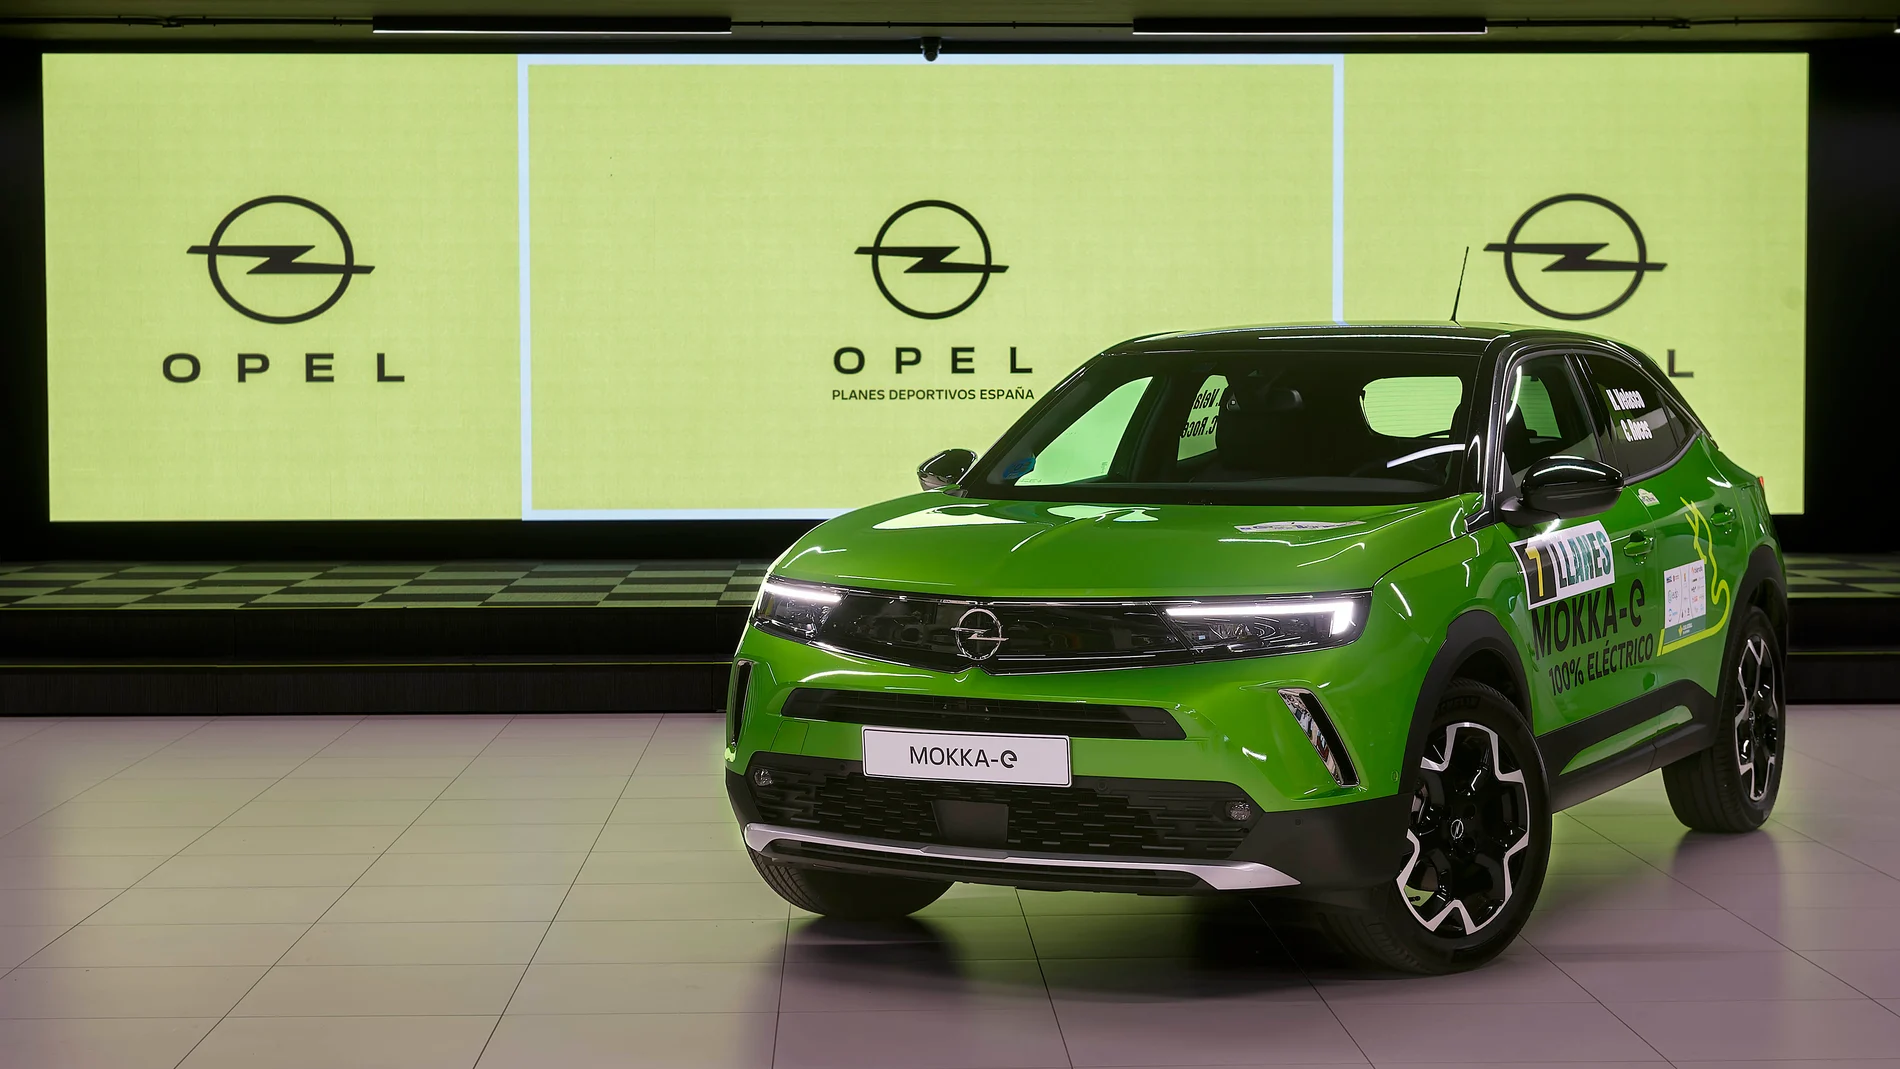 Opel centra sus planes deportivos en carreras de energías alternativas